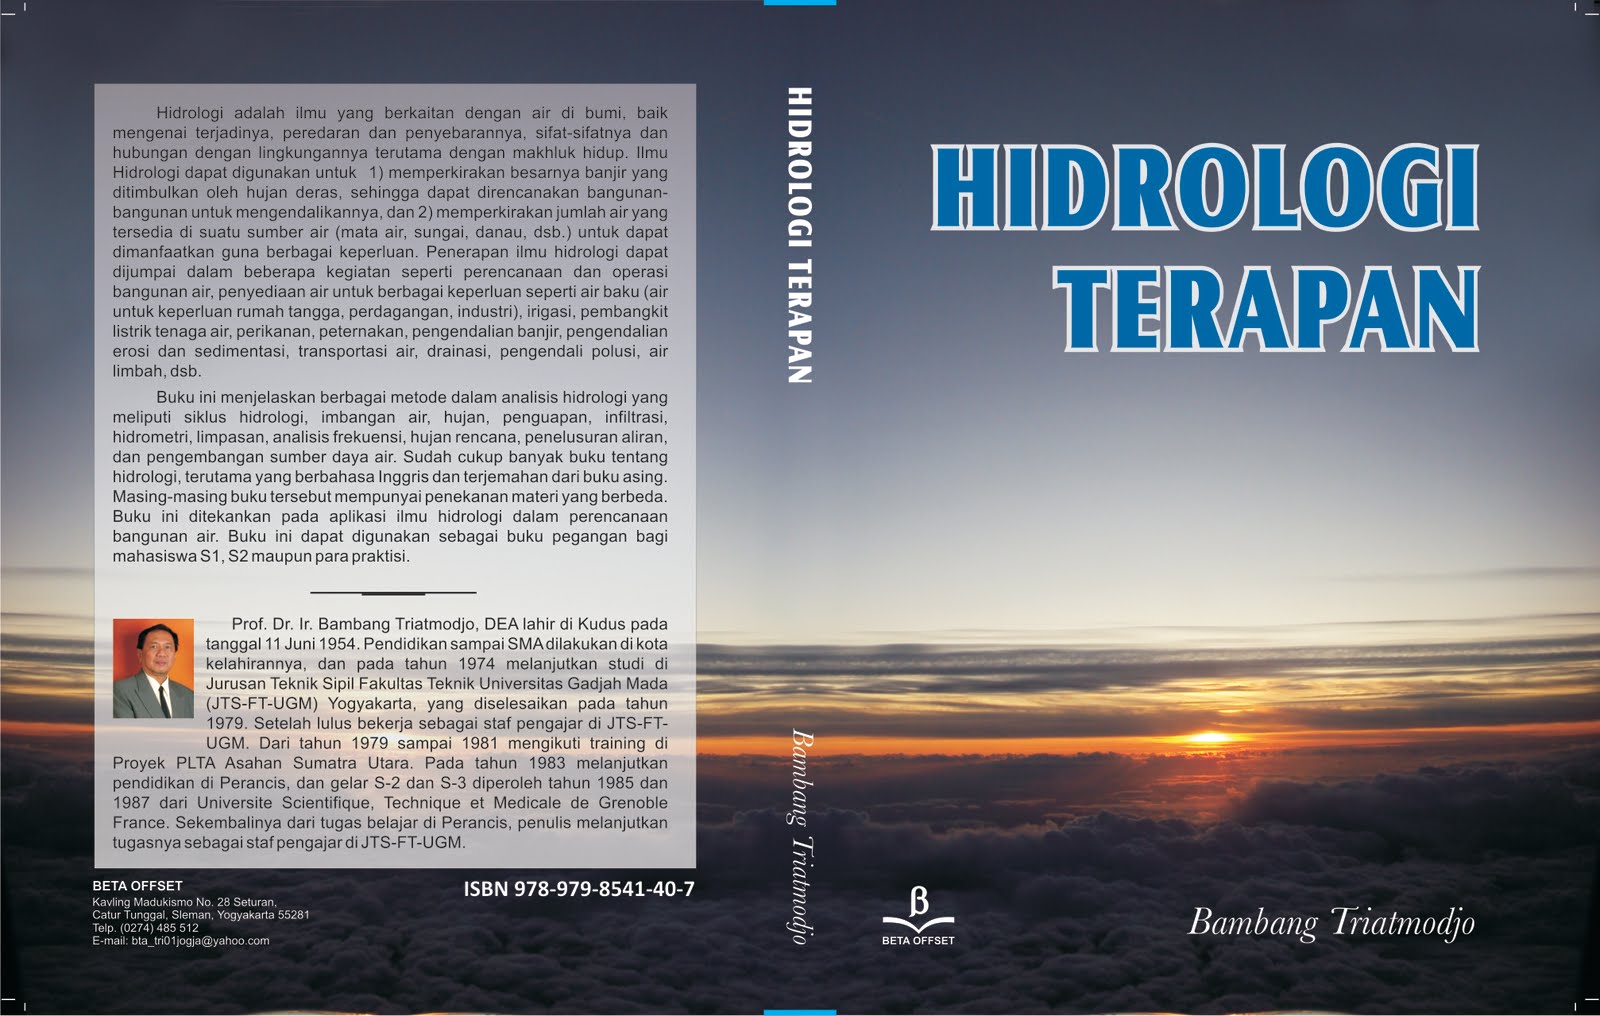 Hidrologi Terapan Bambang Trihatmodjo.pdf